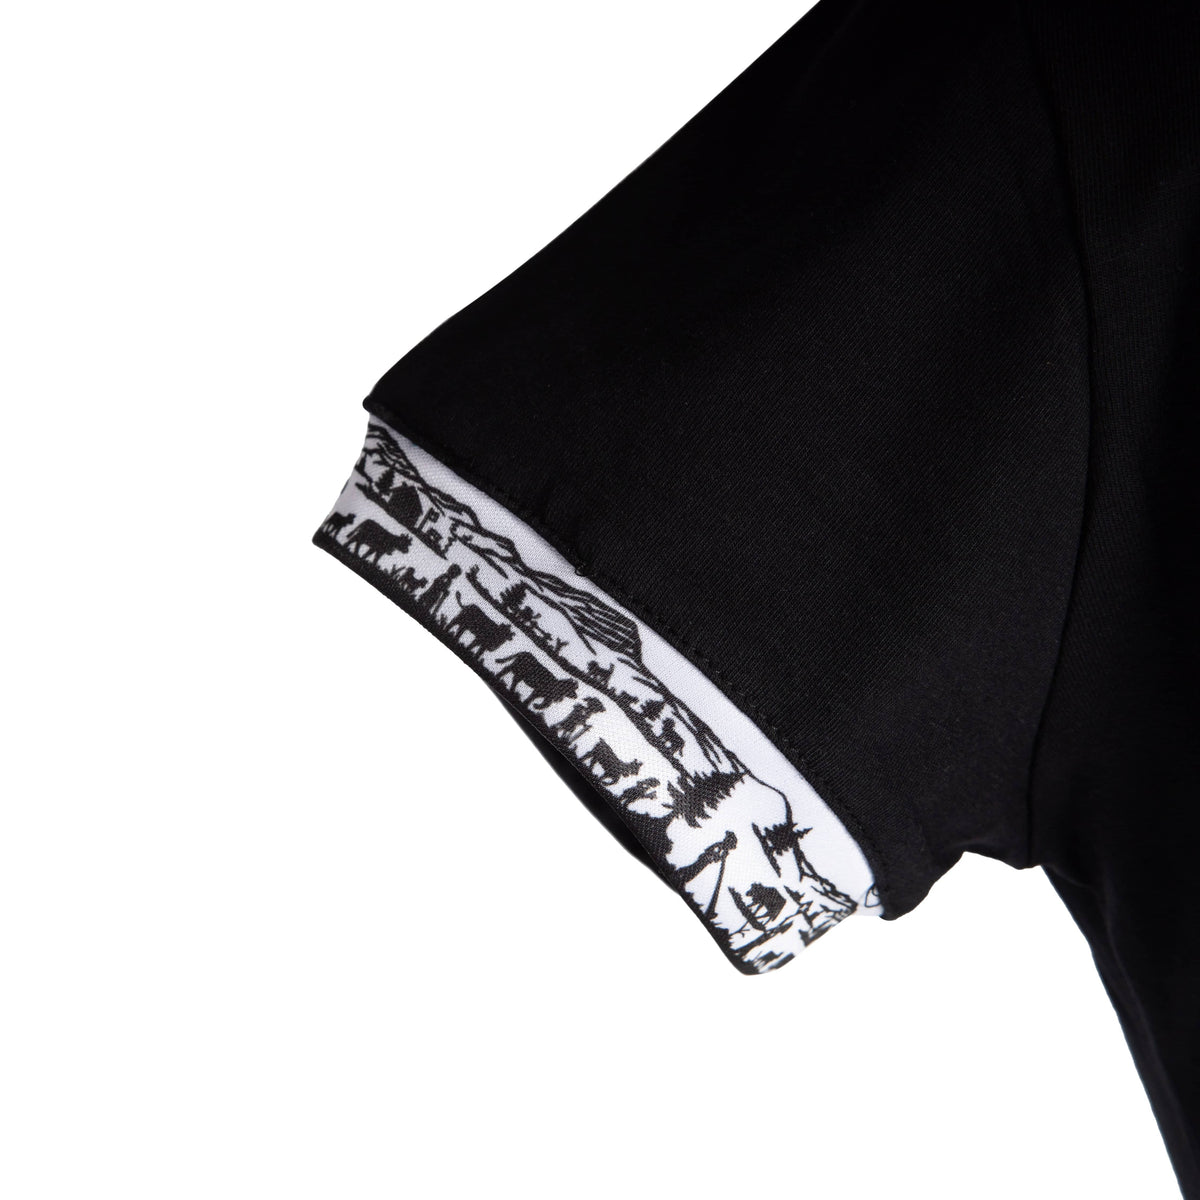 Herren Scherenschnitt-Shirt Original von Edelvetica, das traditionelle Schweizer Handwerkskunst mit modernem Design verbindet. Das Shirt zeigt einen detaillierten Scherenschnitt-Druck, der kulturelle Elemente der Schweiz aufgreift. Ideal für einen individuellen und kulturell inspirierten Look, der Tradition und Moderne stilvoll vereint.